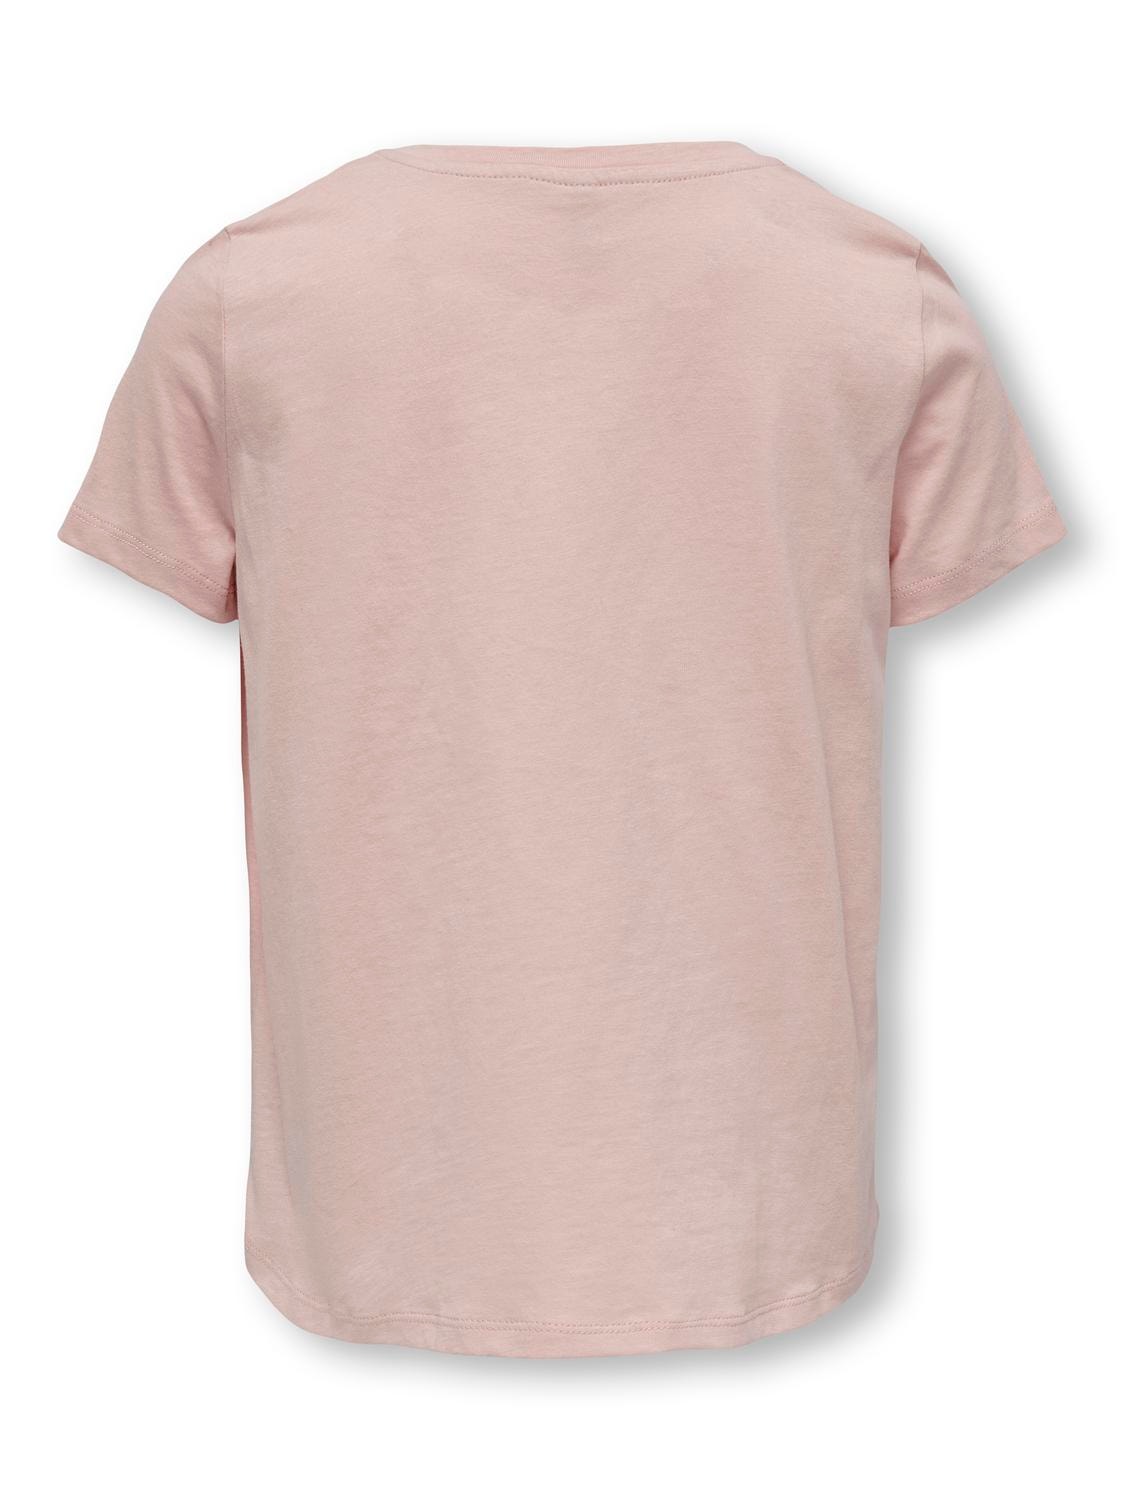 ONLY Camisetas Corte volume Cuello redondo -Rose Smoke - 15285374